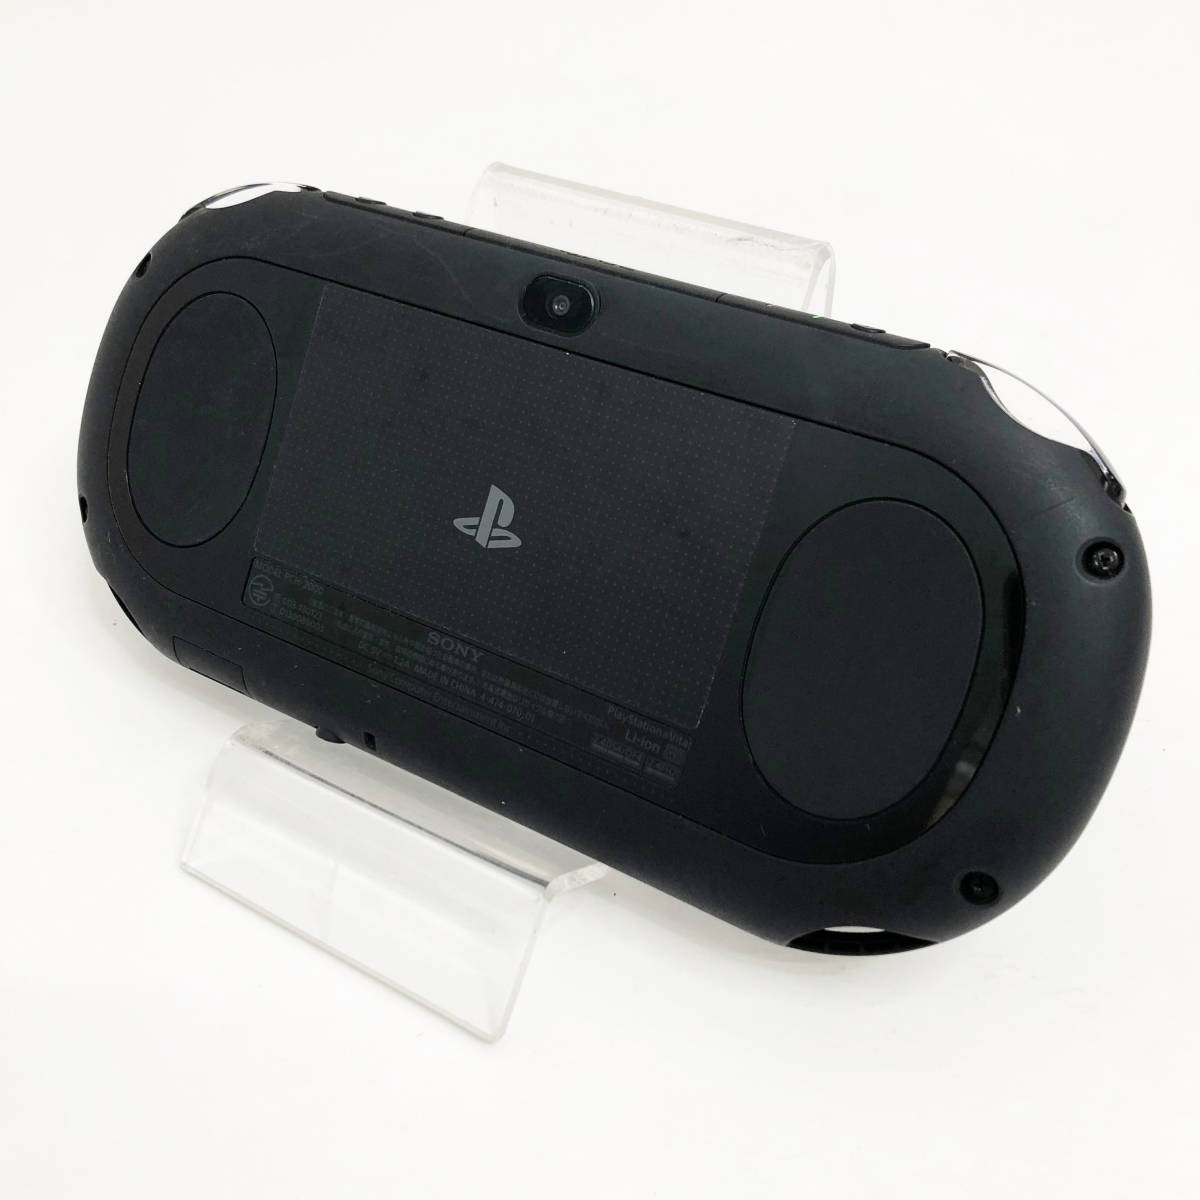 中古美品☆SONY PlayStation Vita PCH-2000 ZA11 ブラック 黒 動作良好 プレイステーション ヴィータ Wi-Fiモデル 送料無料